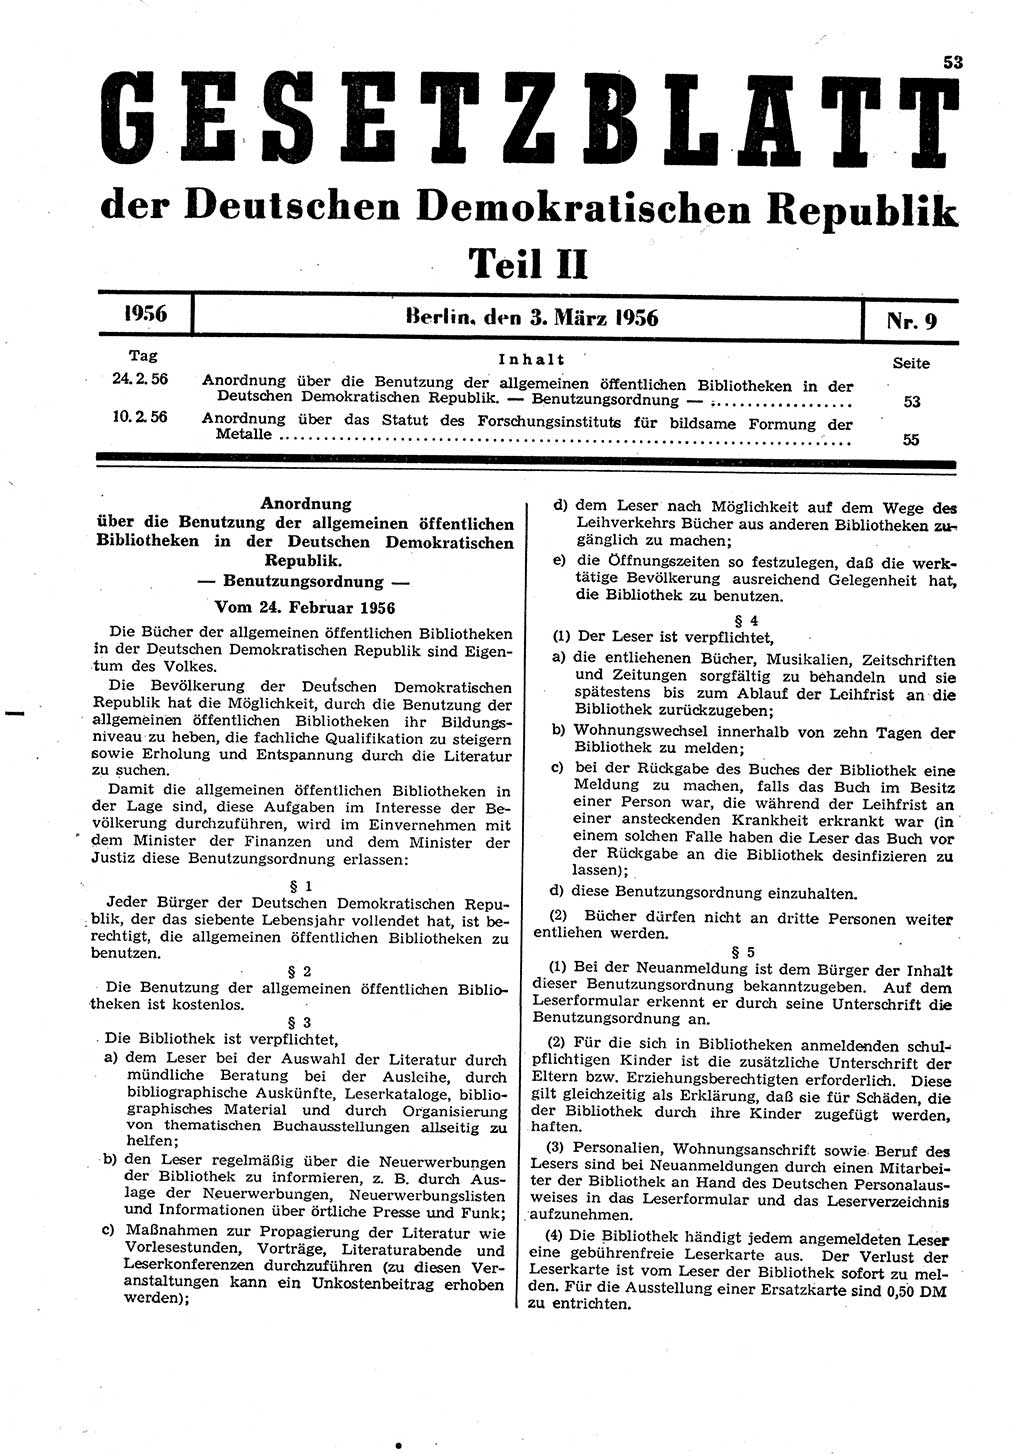 Gesetzblatt (GBl.) der Deutschen Demokratischen Republik (DDR) Teil ⅠⅠ 1956, Seite 53 (GBl. DDR ⅠⅠ 1956, S. 53)